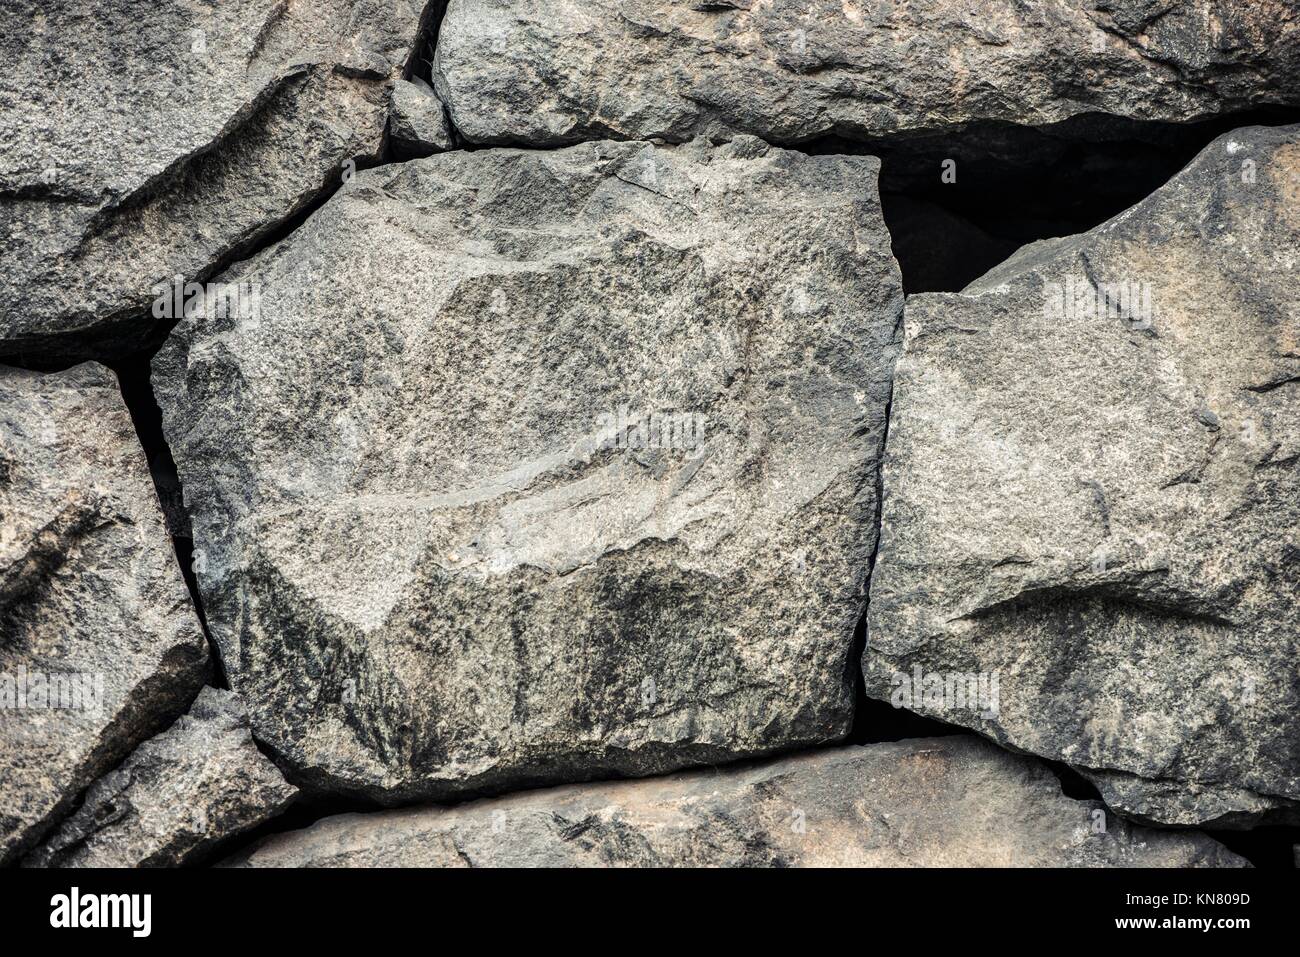 Sfondo di pietra, parete di roccia sullo sfondo con tessitura grossolana. Abstract, grungy e superficie testurizzata del materiale lapideo. La natura particolare delle rocce. Foto Stock